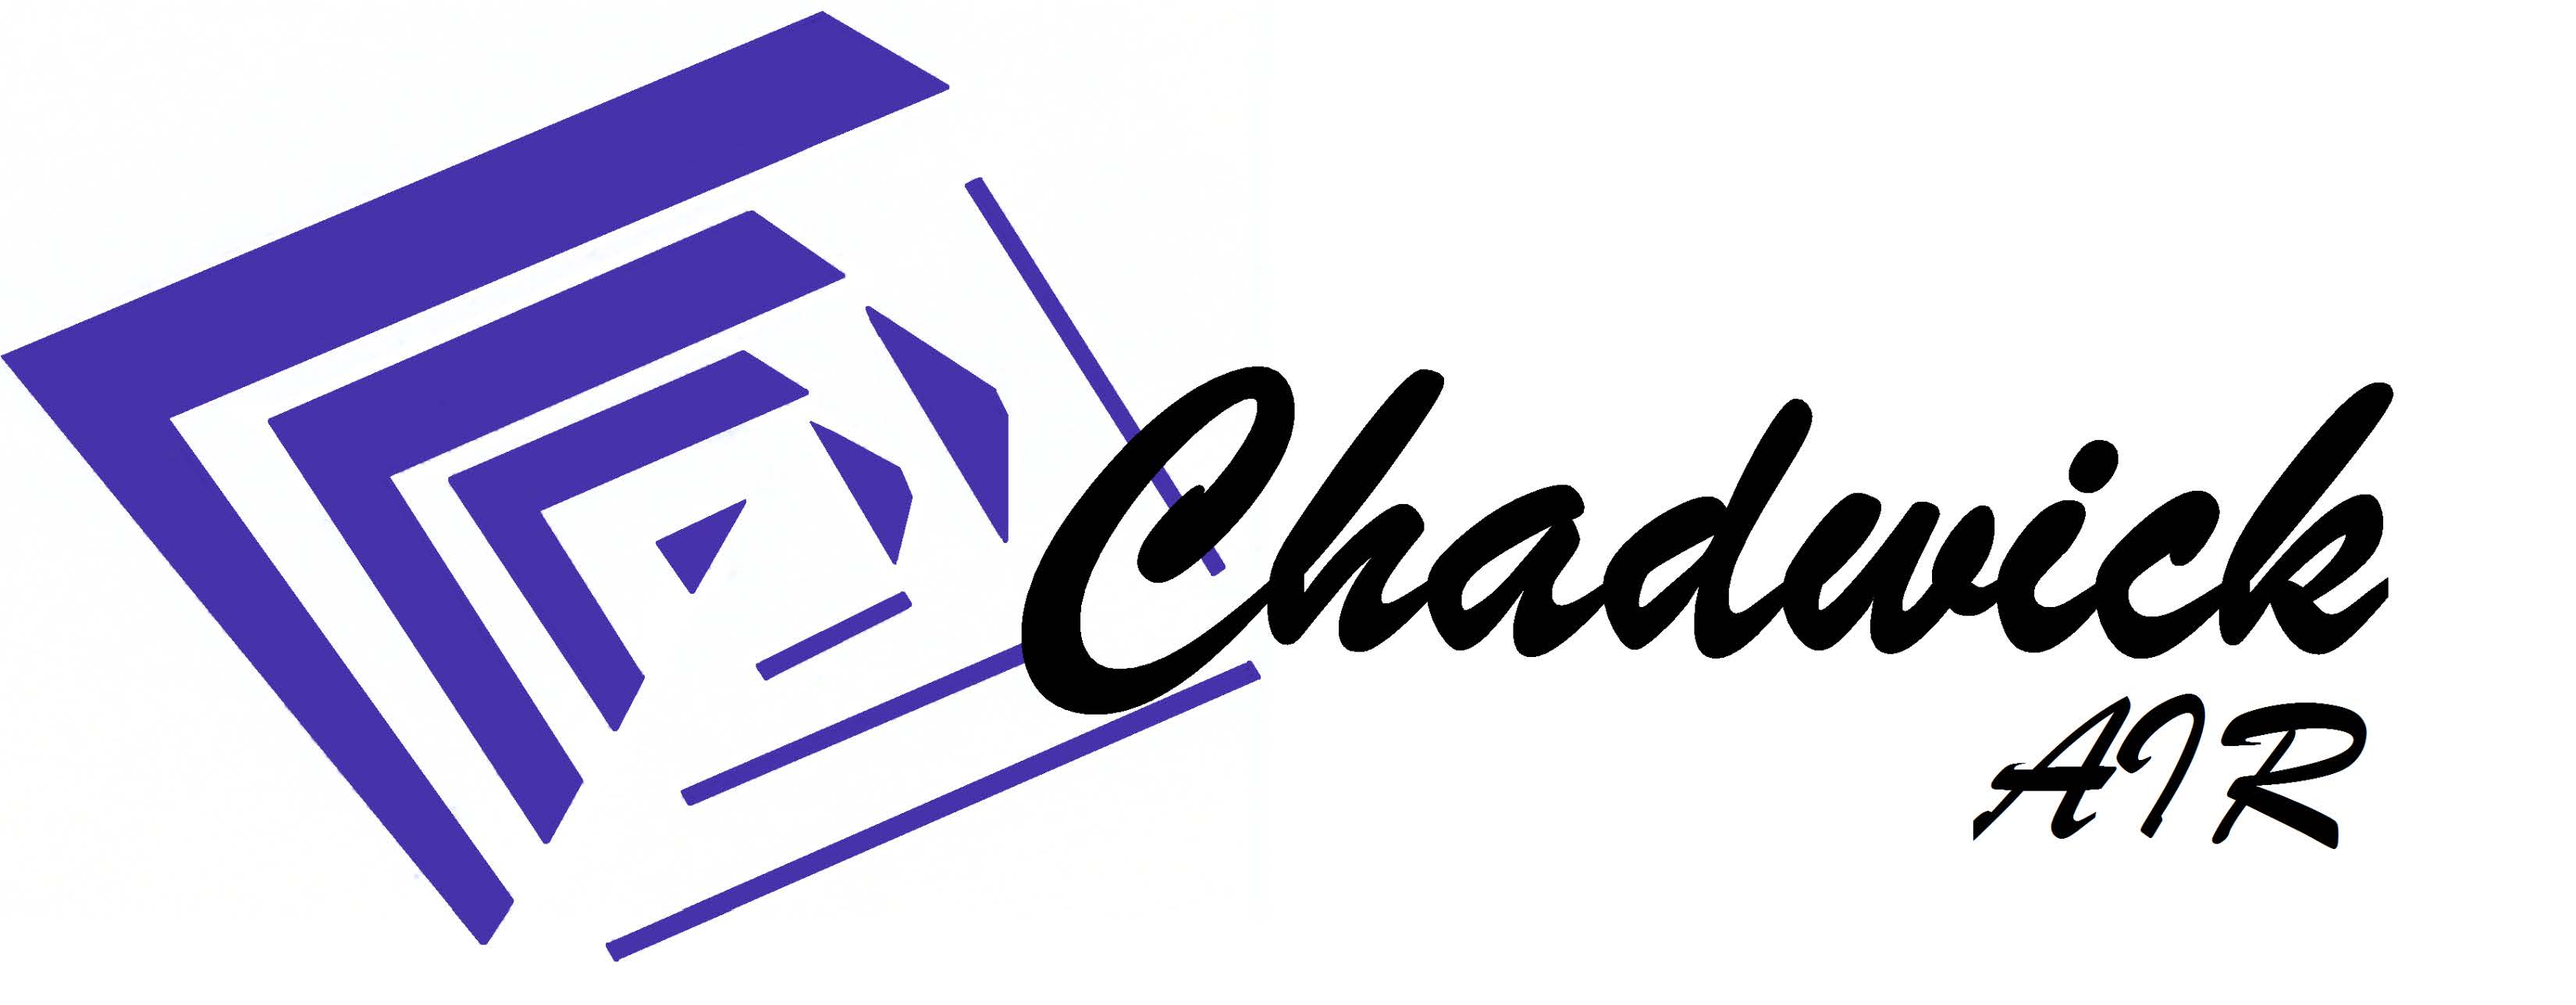 Chadwick Air logo